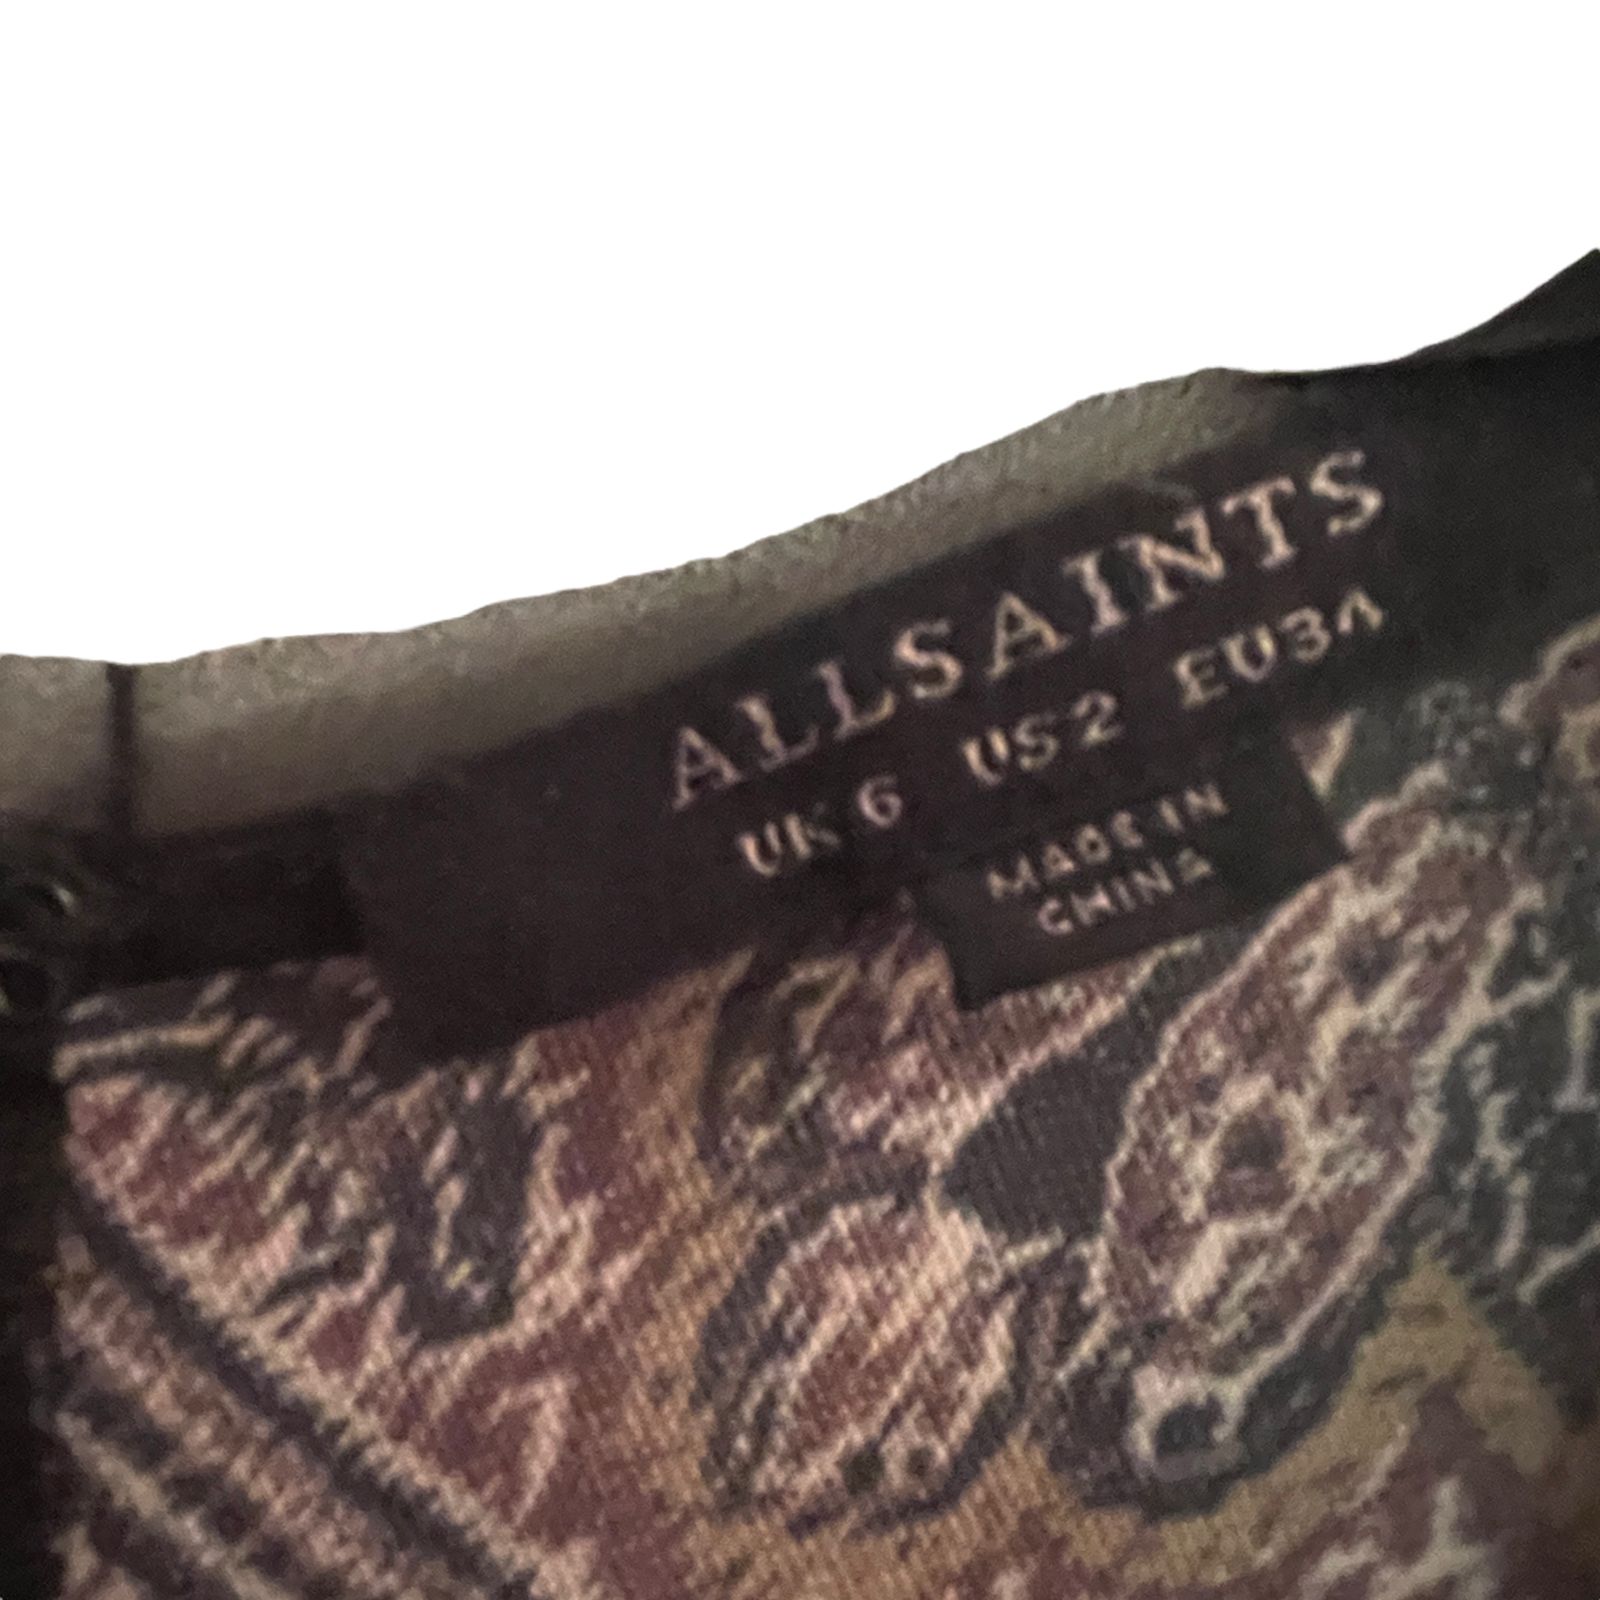 Allsaints All Saints Reid Scarf Playsuit Romper Purple Paisley Size 26" / US 2 / IT 38 - 5 Thumbnail